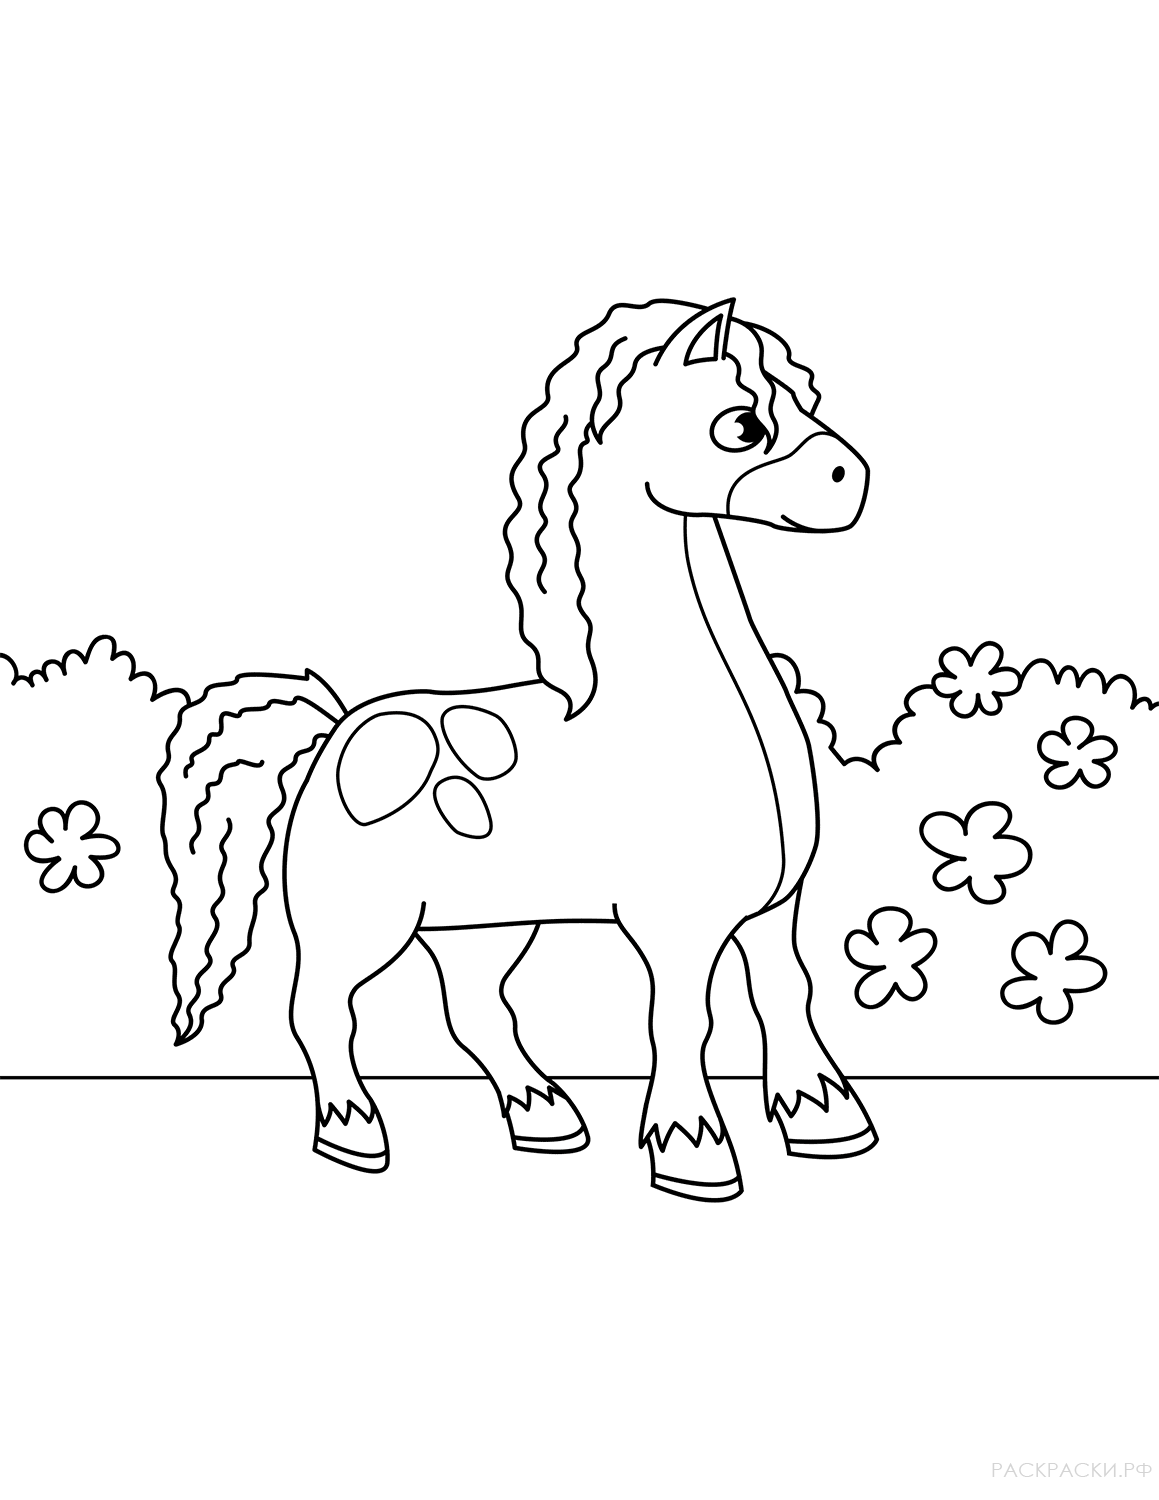 Раскрашиваем лошадку. Раскраска. Лошадка. Лошадка раскраска для детей. Лошадь раскраска для детей. Раскраски лошади и пони.